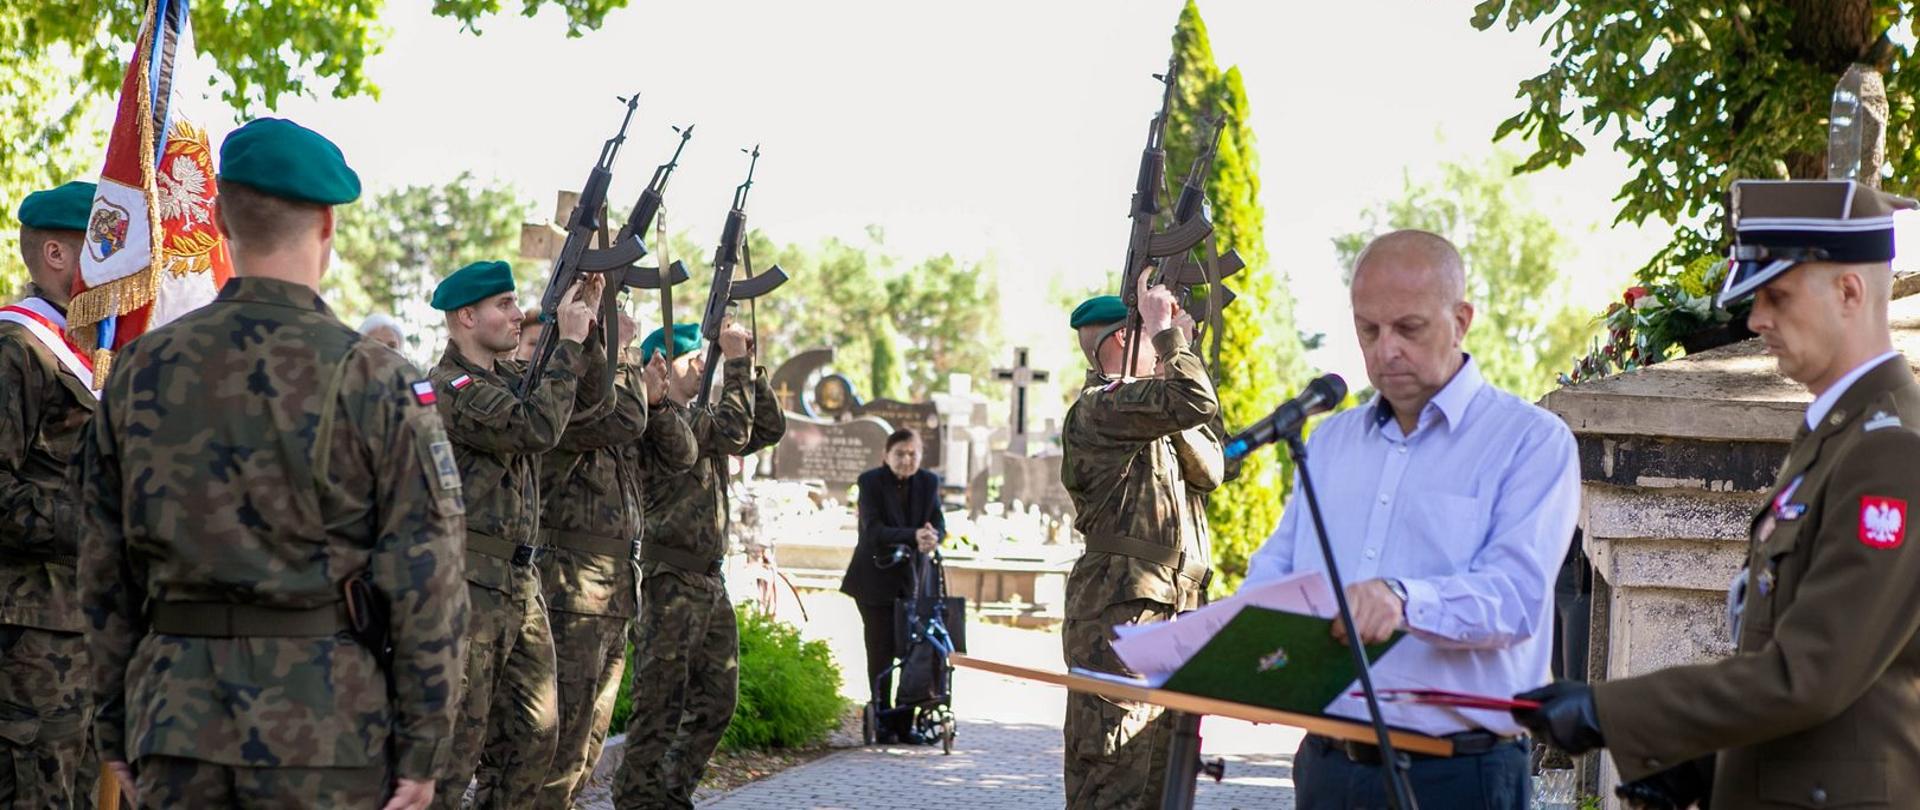 Żołnierze podczas salwy honorowej na cmentarzu w Brańszczyku.